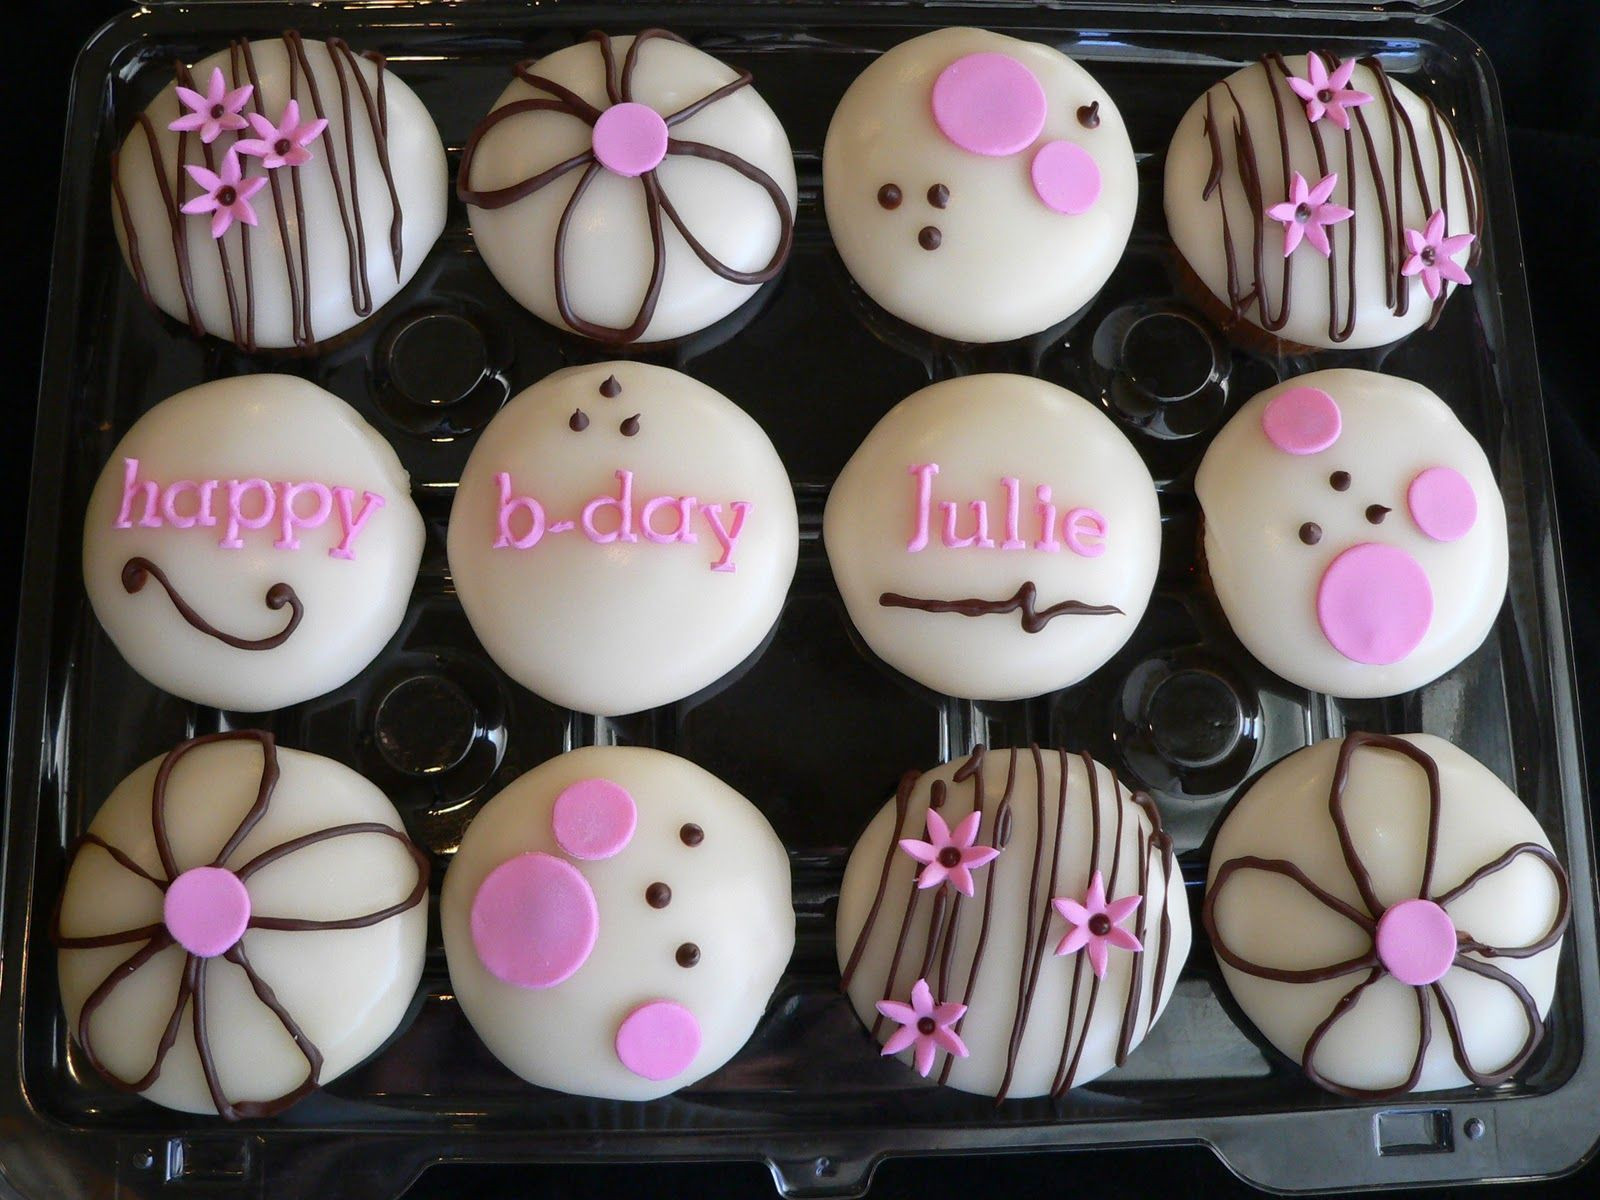 Best ideas about Happy Birthday Julie Cake
. Save or Pin happy birthday julie cakes Now.